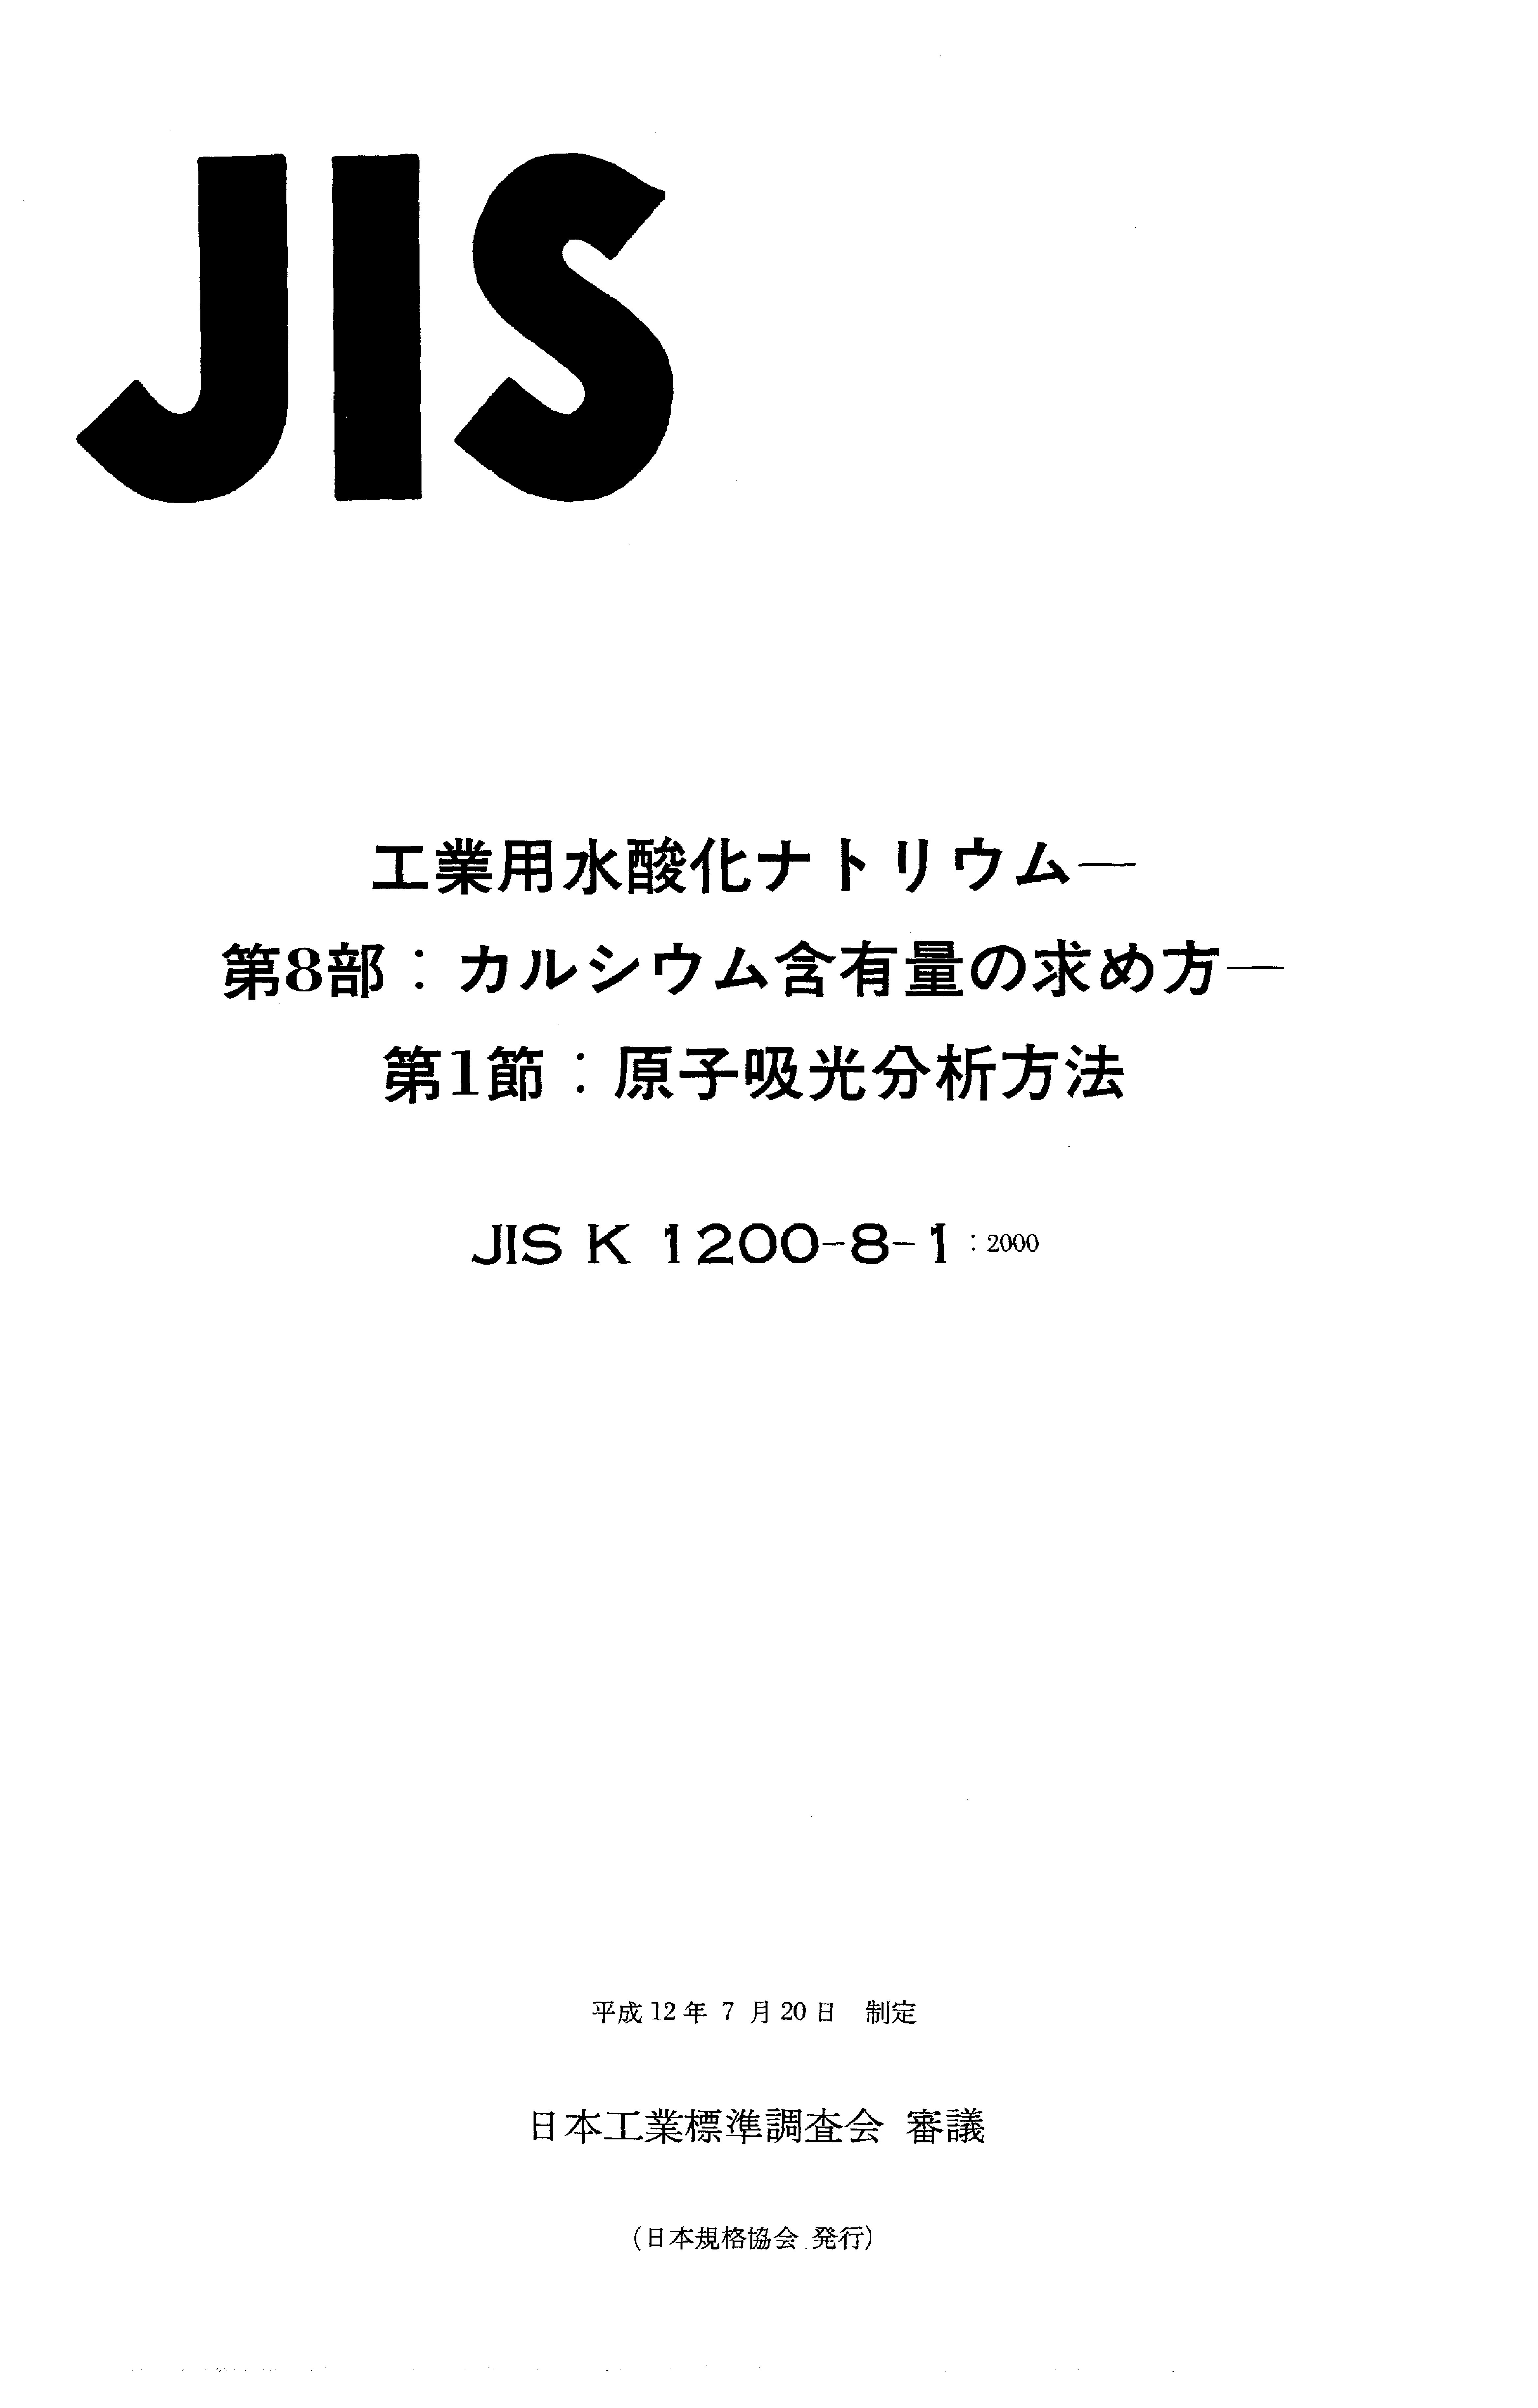 JIS K 1200-8-1:2000